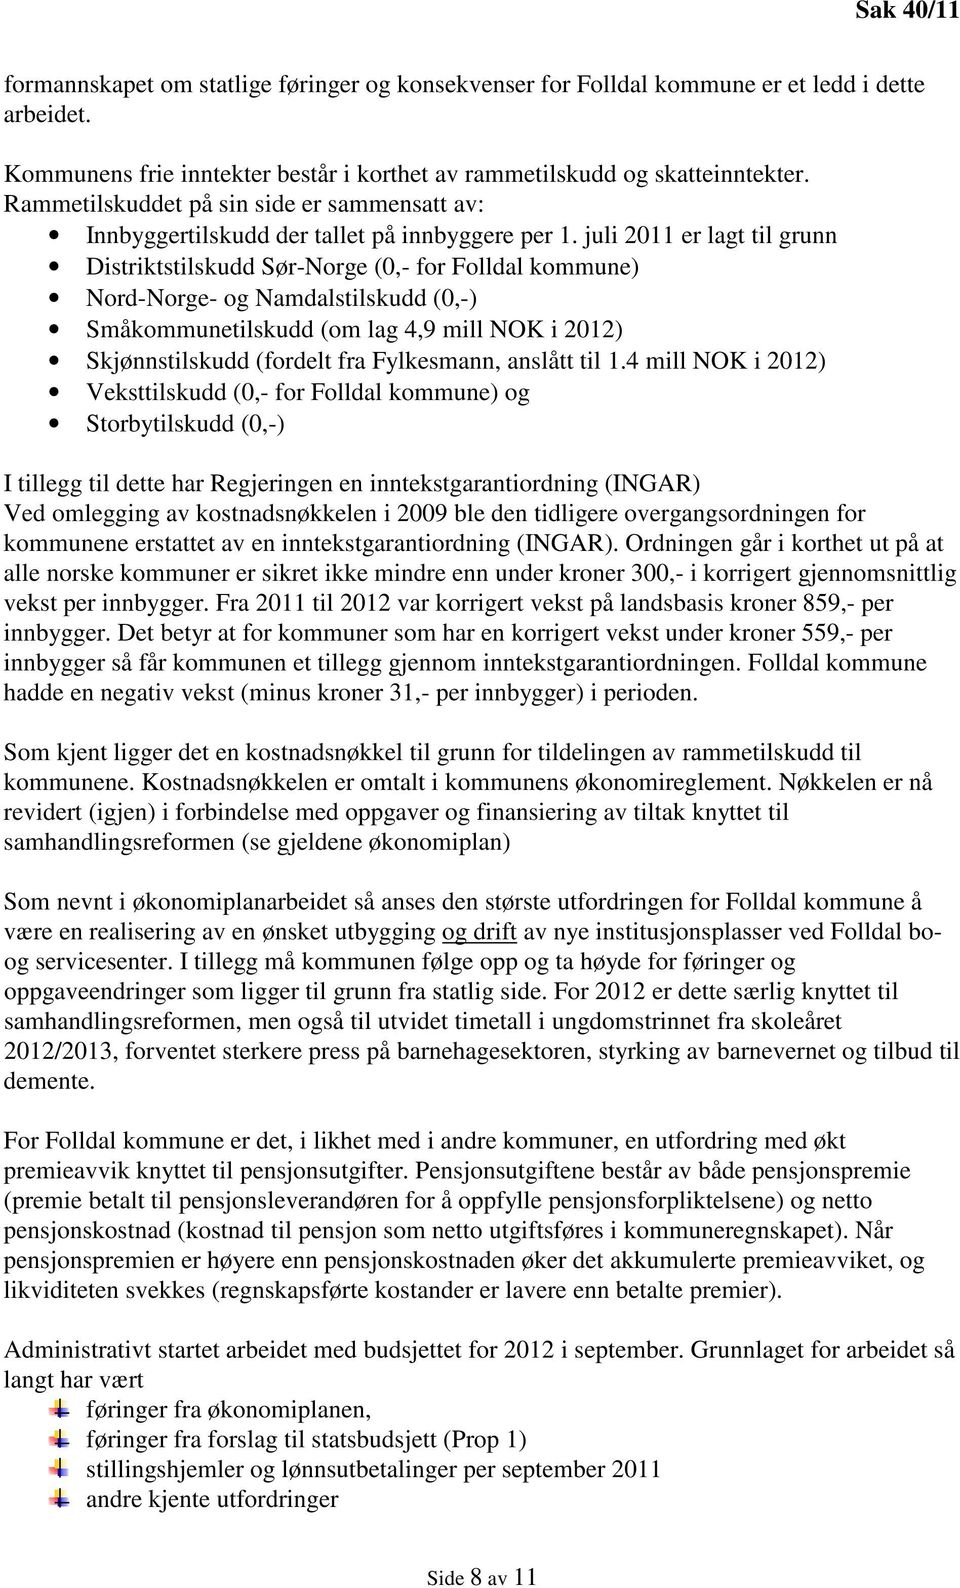 juli 2011 er lagt til grunn Distriktstilskudd Sør-Norge (0,- for Folldal kommune) Nord-Norge- og Namdalstilskudd (0,-) Småkommunetilskudd (om lag 4,9 mill NOK i 2012) Skjønnstilskudd (fordelt fra